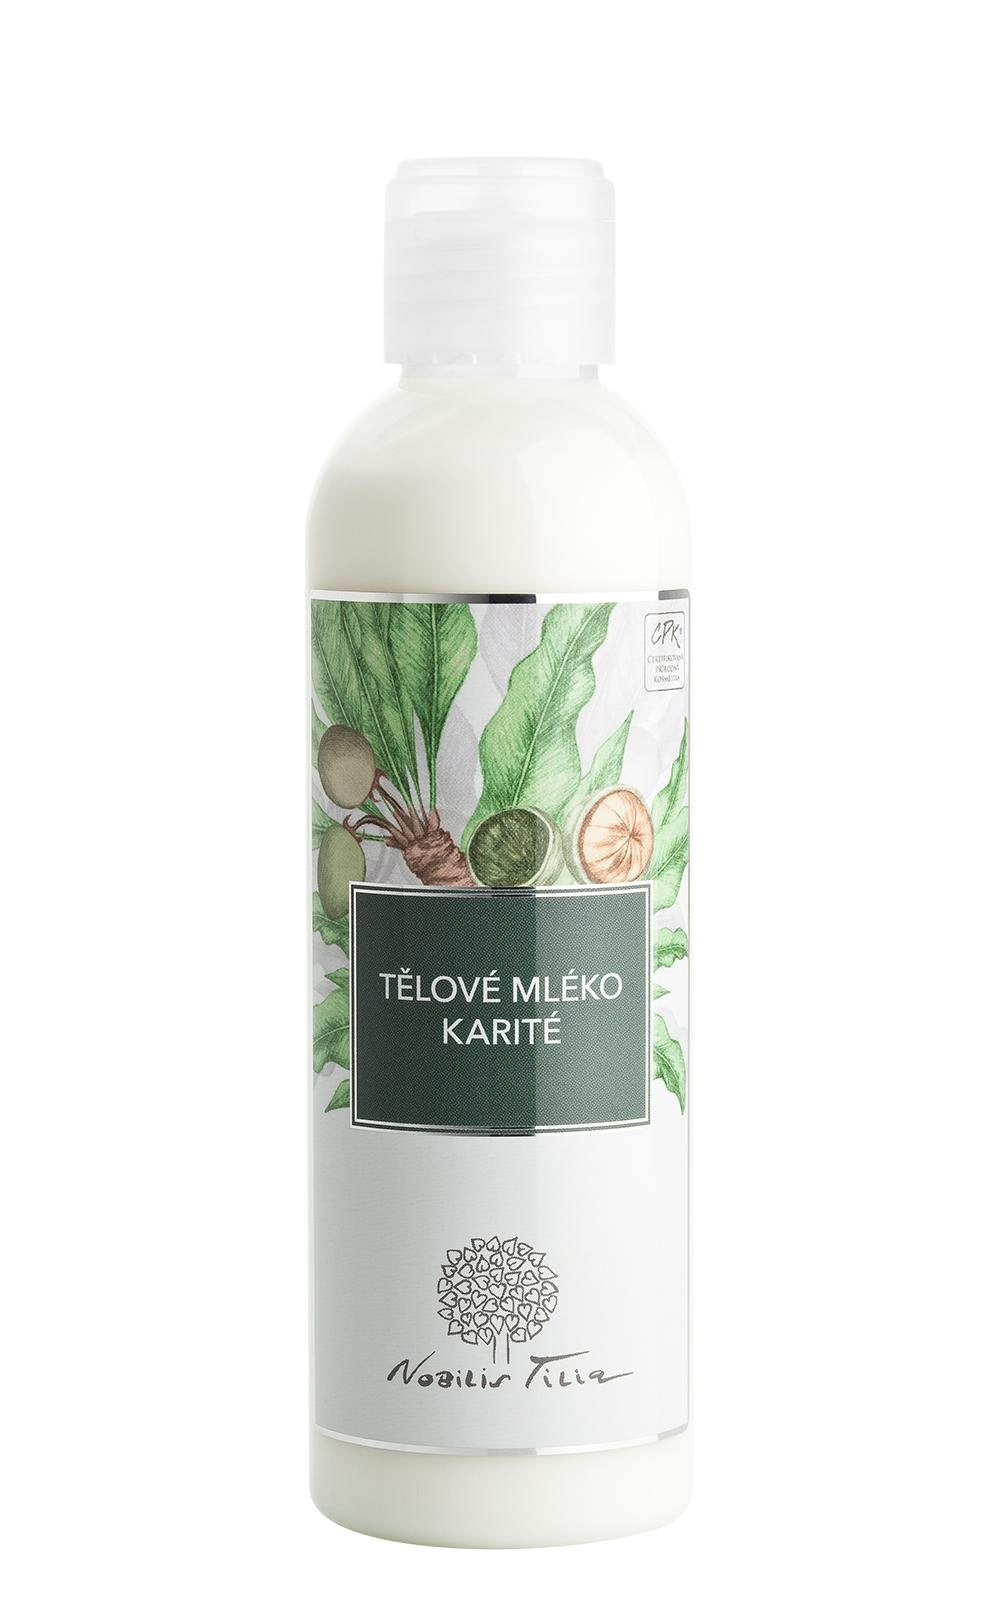 Nobilis Tilia Tělové mléko Karité (200 ml) - ideální pro suchou pleť Nobilis Tilia